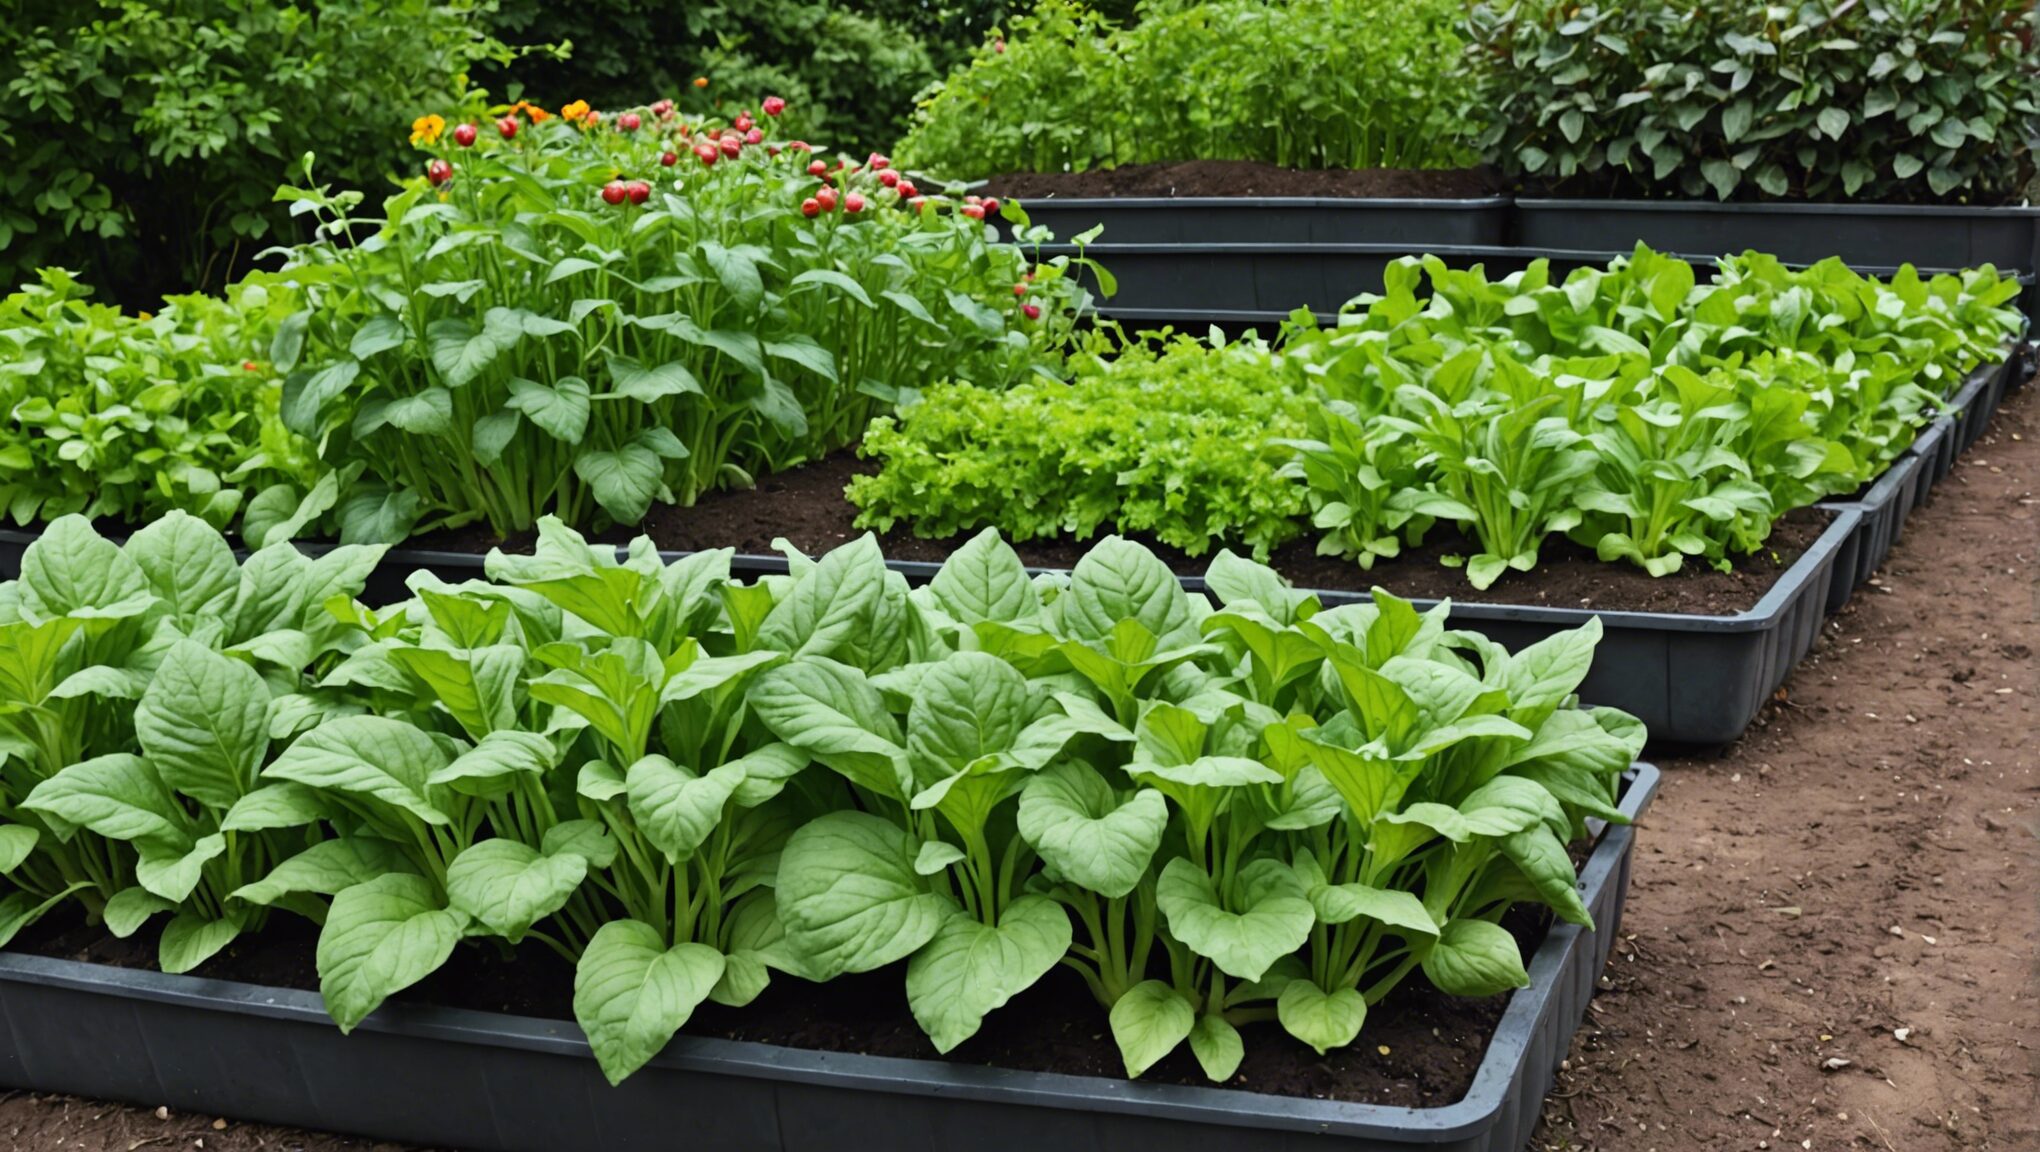 découvrez les meilleures techniques pour planter efficacement des légumes d'été dans votre jardin et profiter d'une récolte abondante. conseils pratiques et étapes clés pour réussir votre potager d'été.